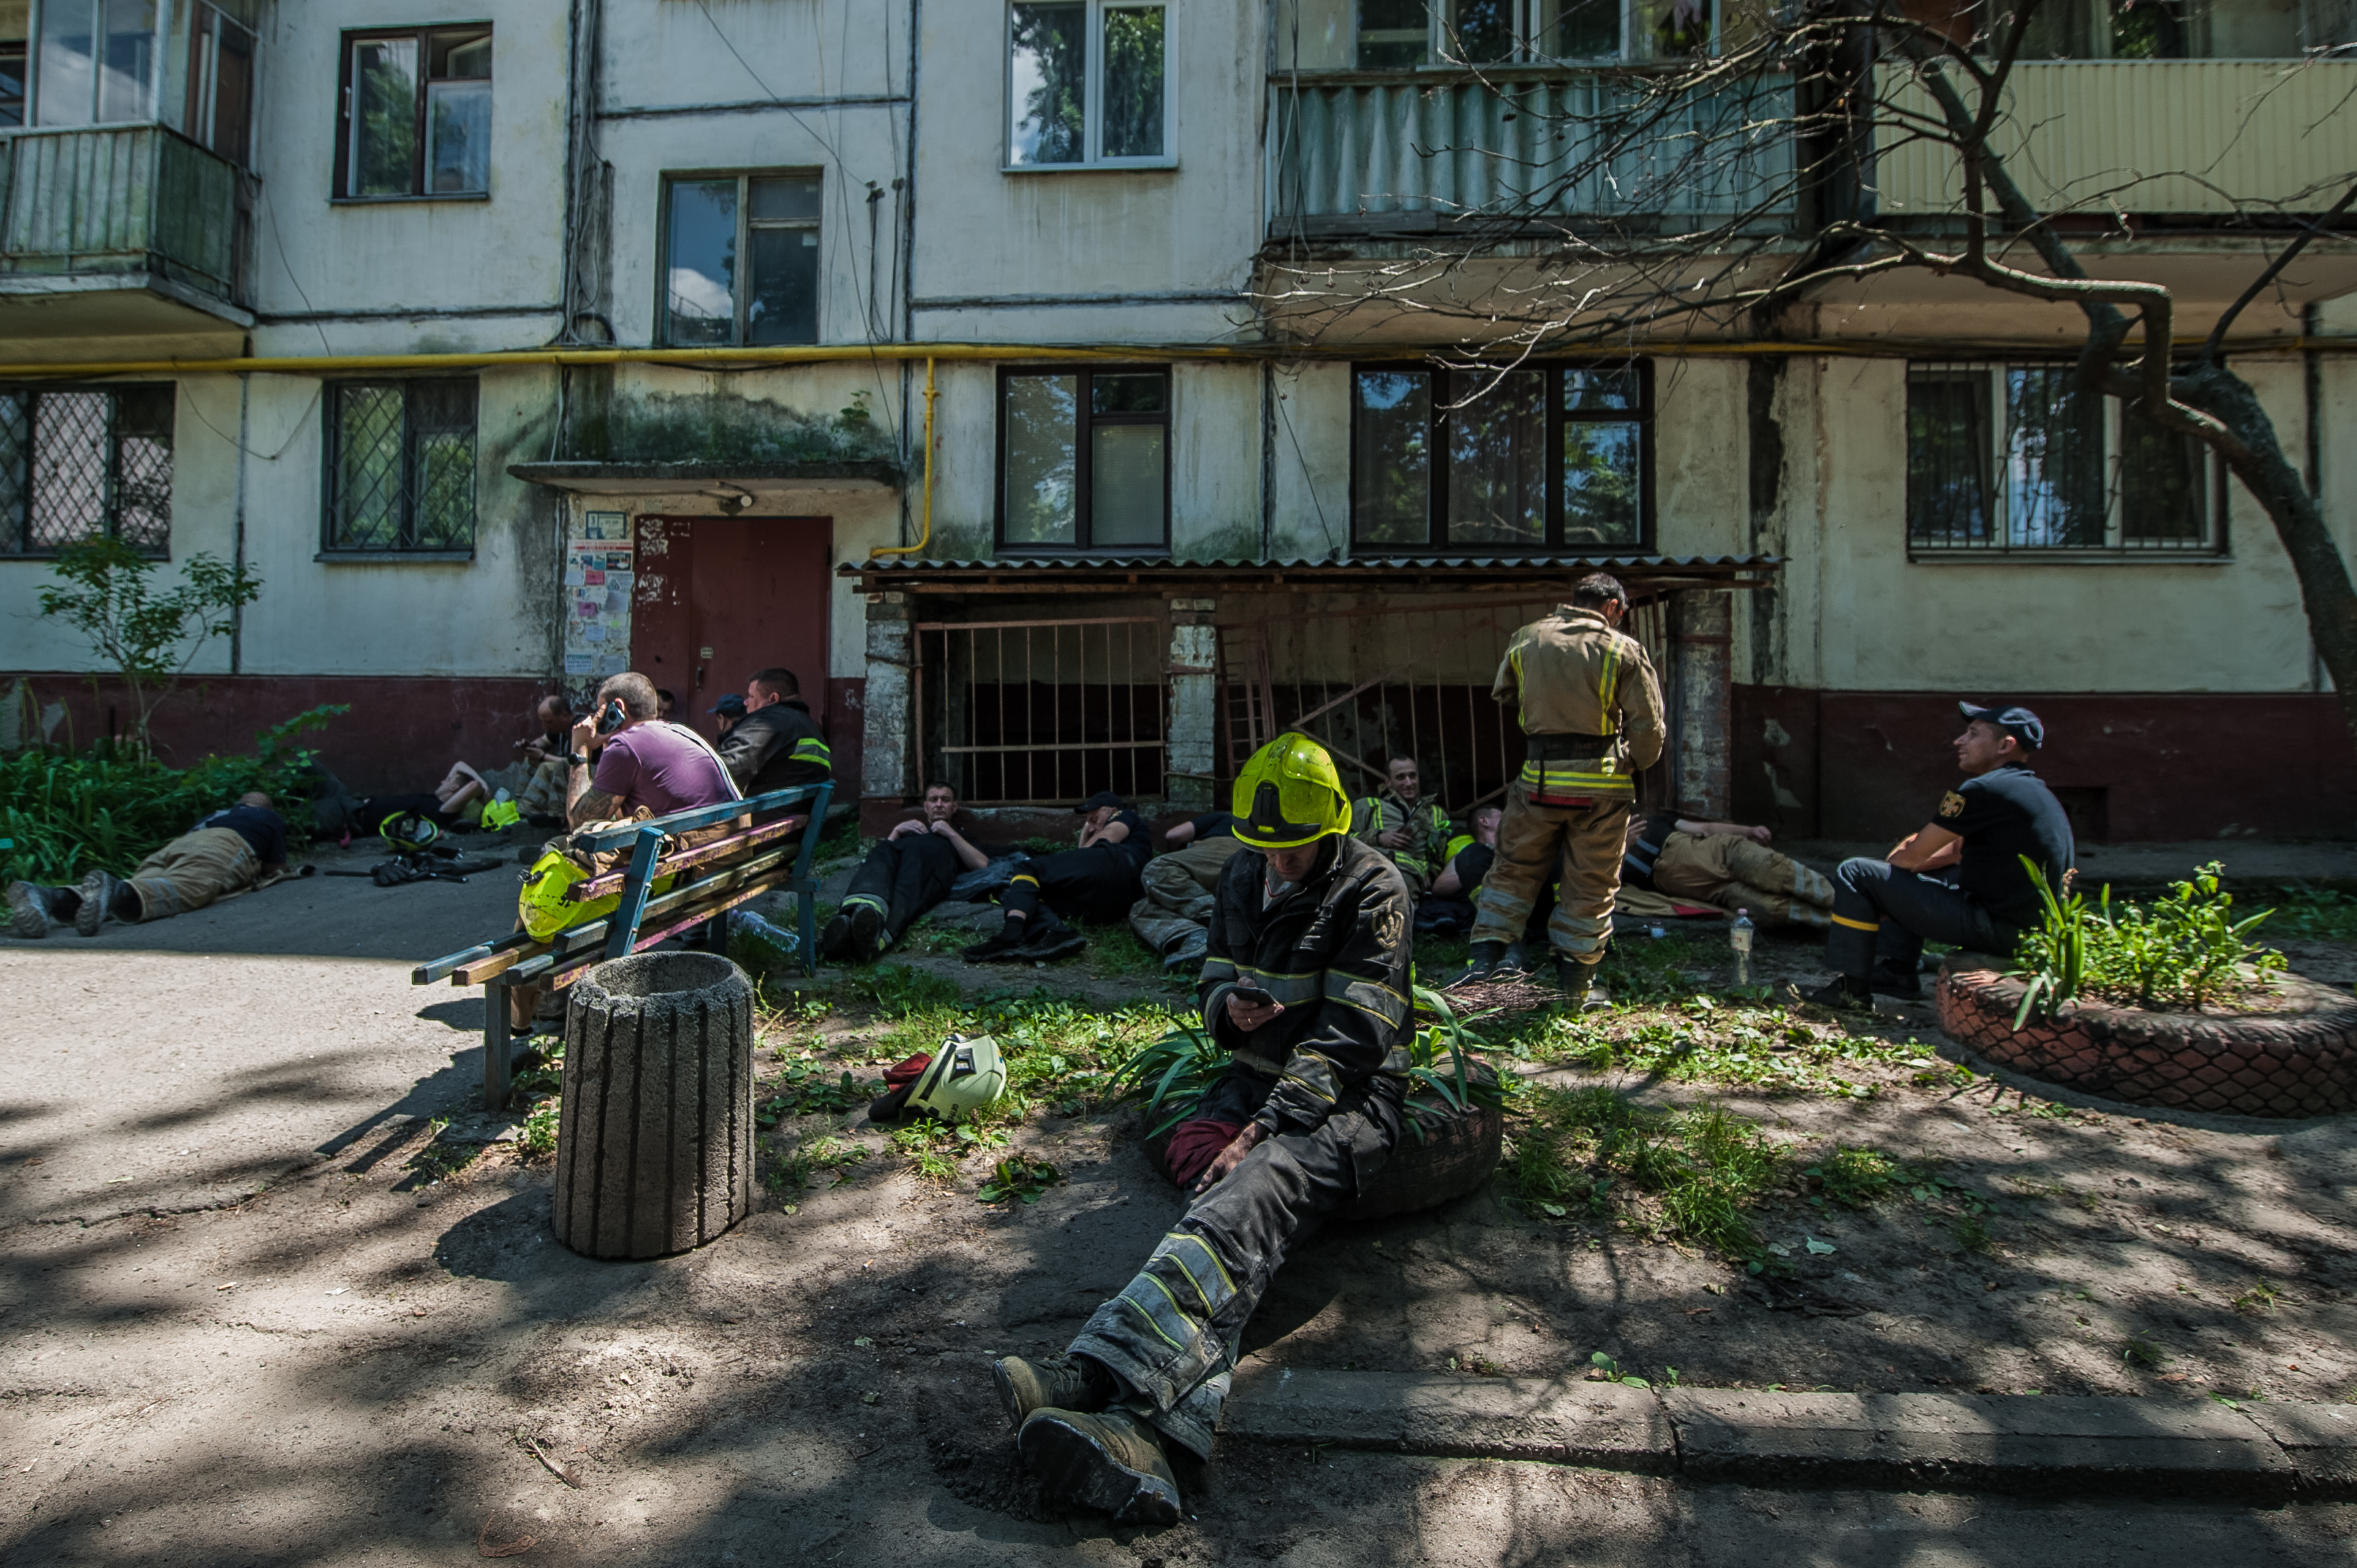 Рятувальники продовжують шукати зниклих безвісти в Кременчуку. Кількість загиблих зростає